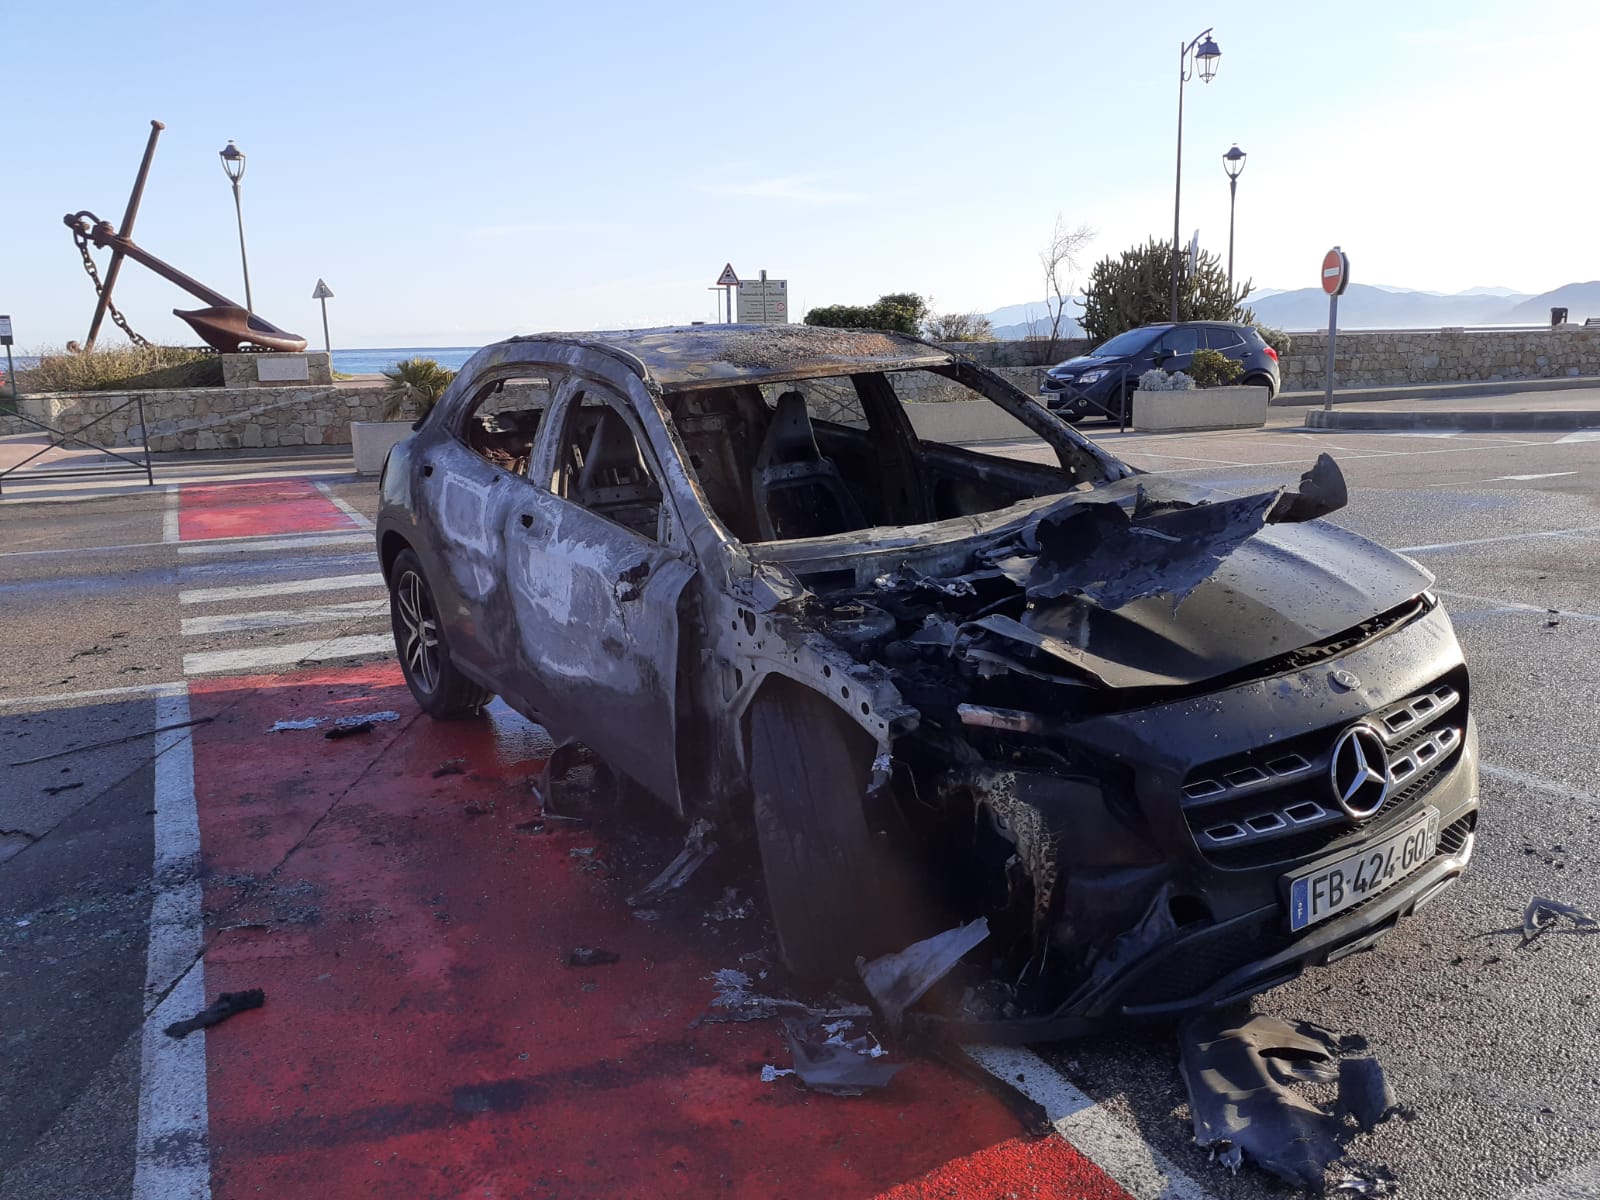 Île Rousse : La voiture d'Angèle Bastiani, candidate aux municipales, incendiée